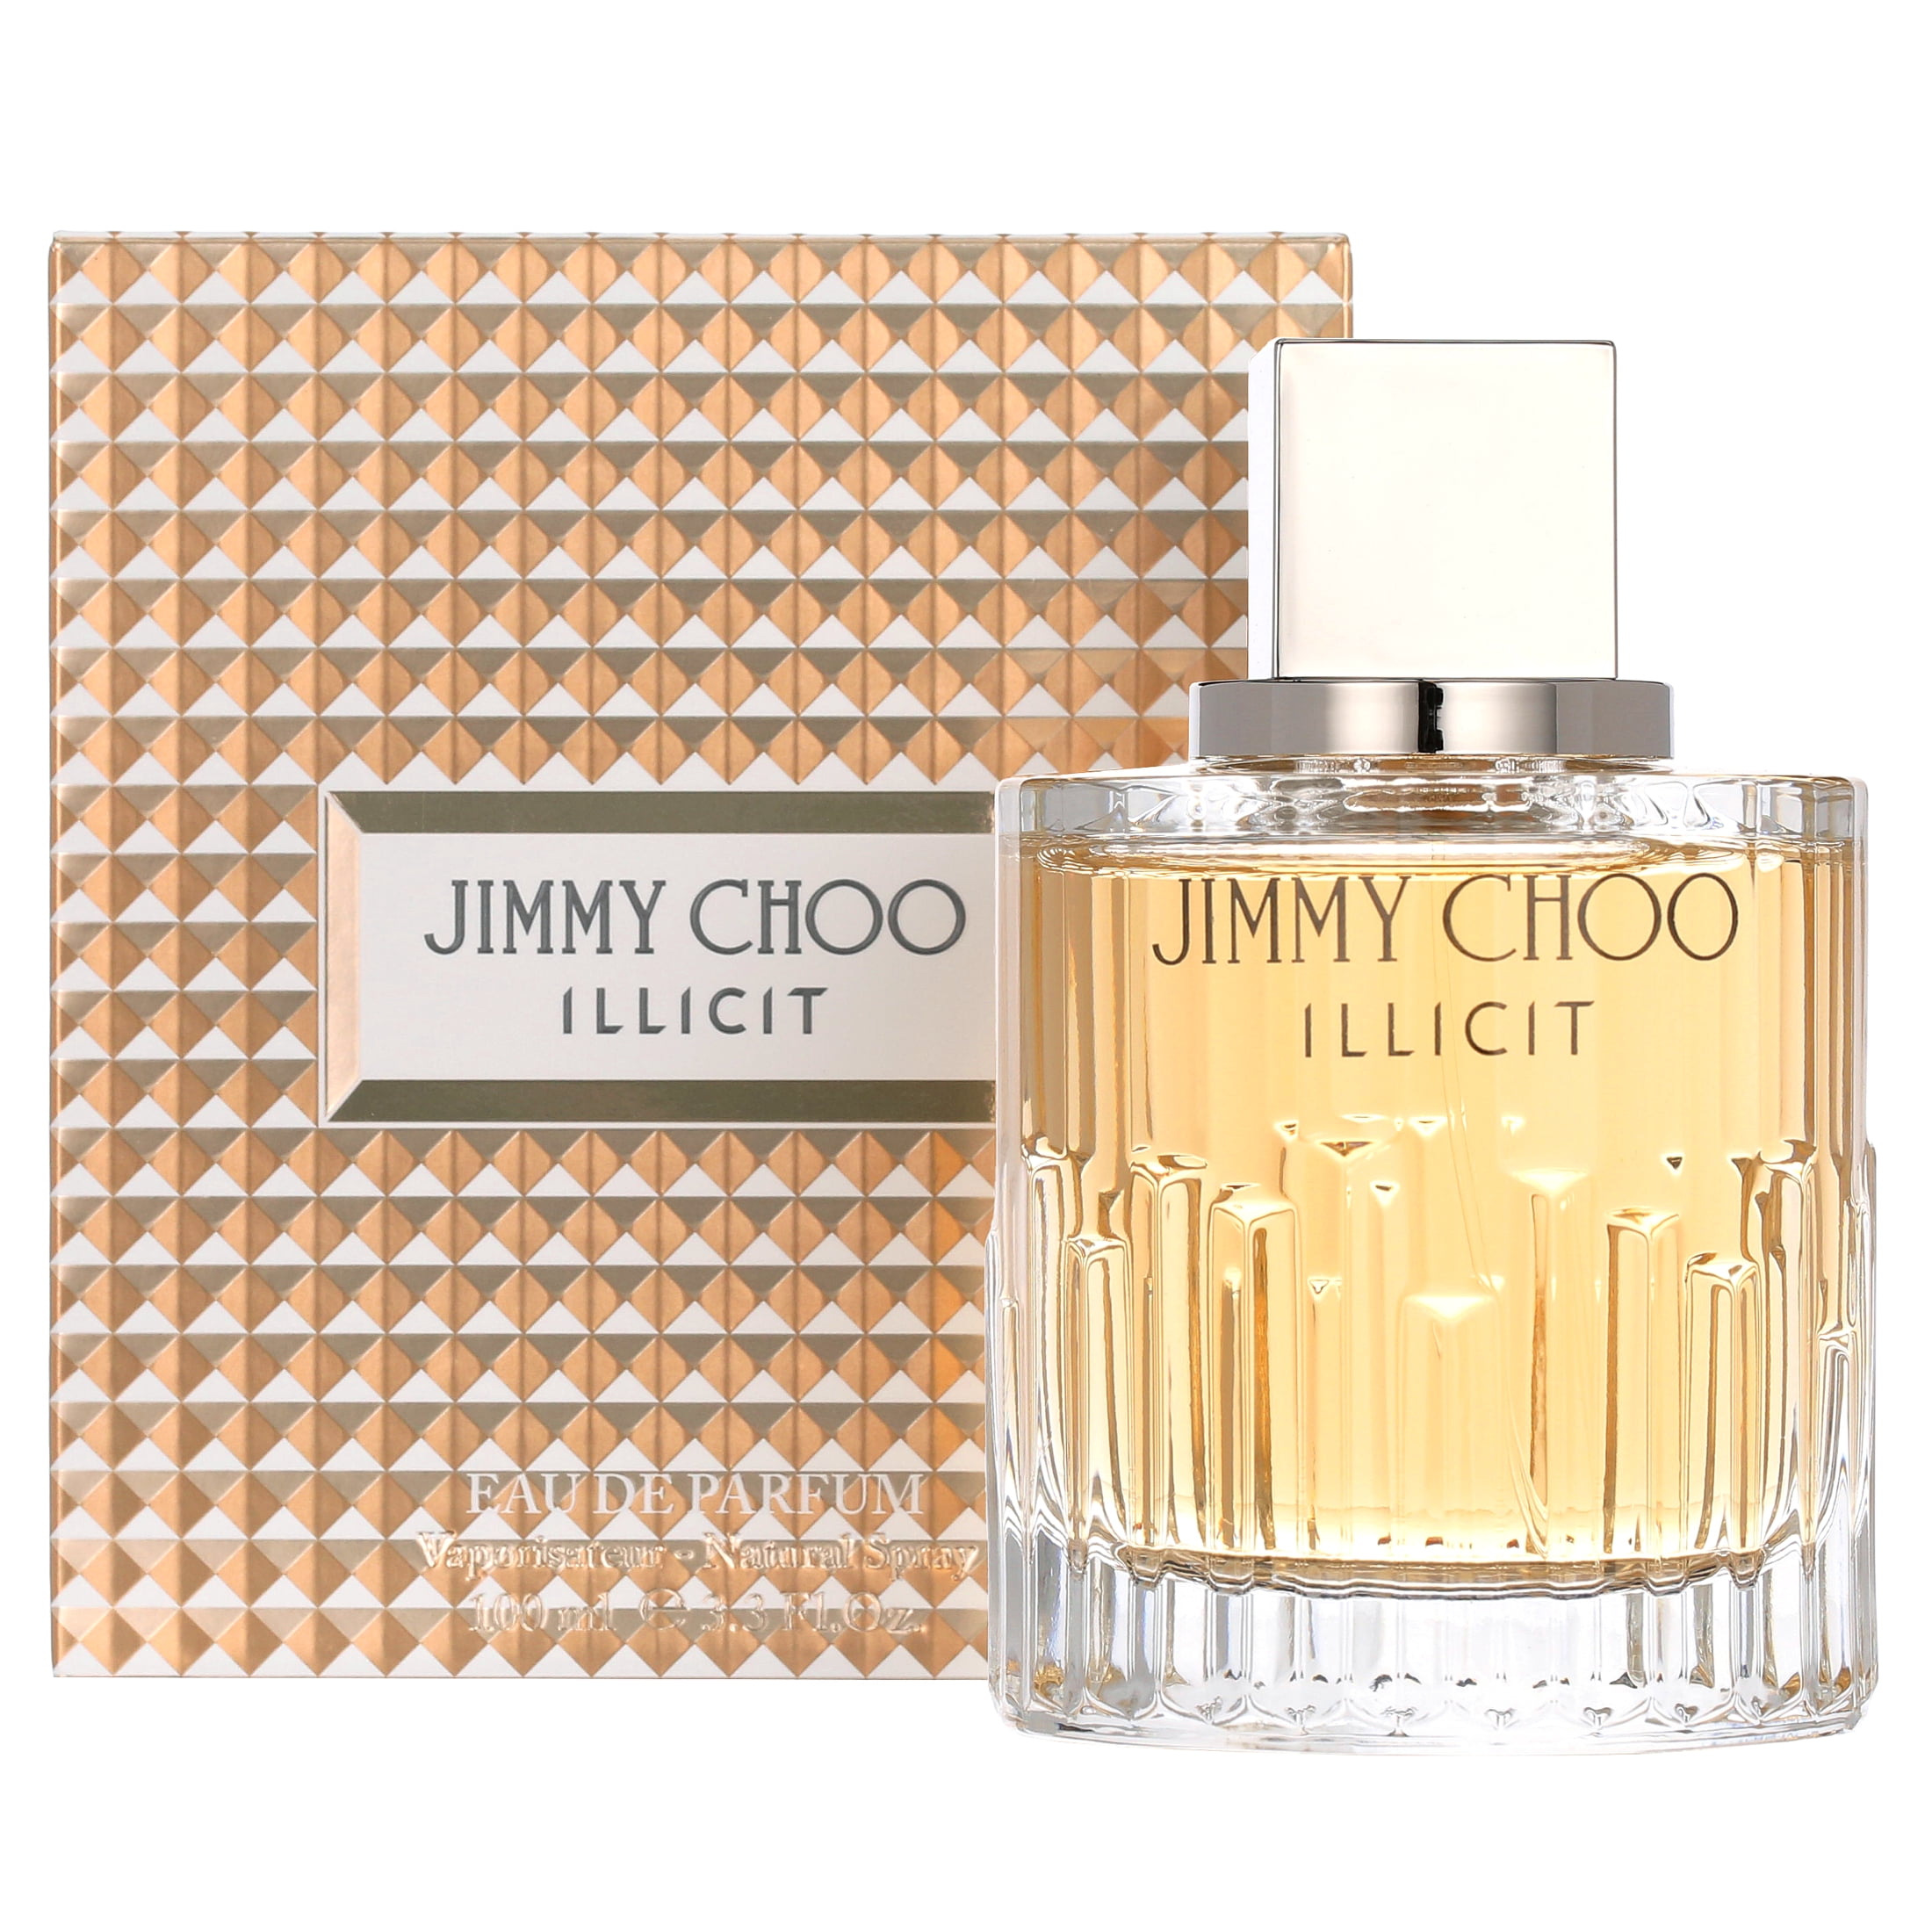 Jimmy Choo Perfume for Women